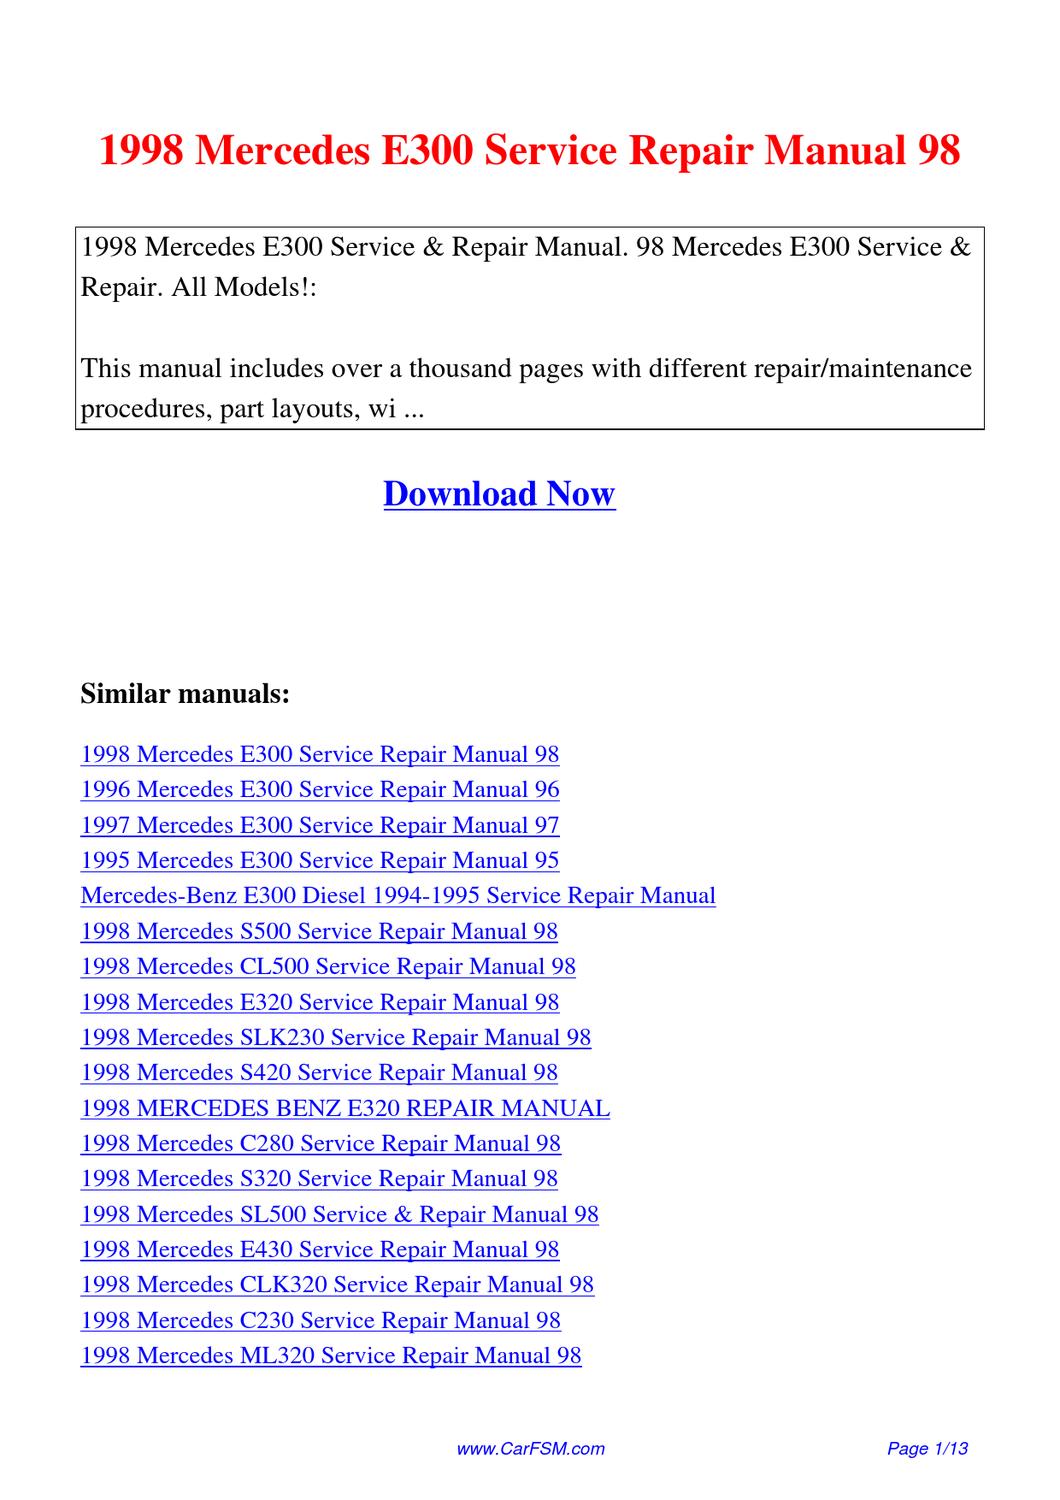 mercedes benz slk230 repair manual